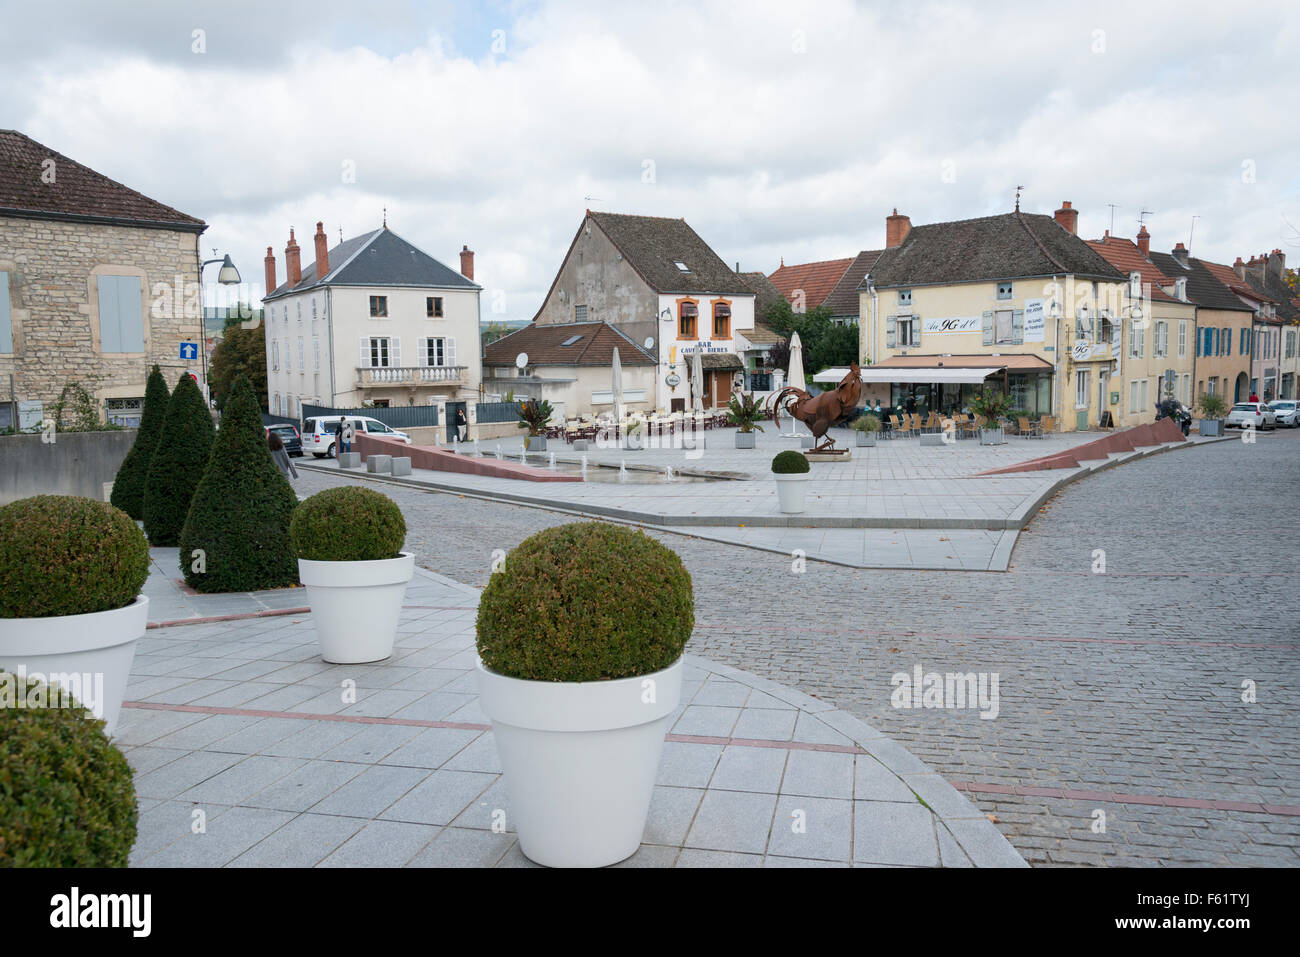 Geschäften und Gebäuden in einer Straßenszene in der Stadt von Chagny Frankreich Stockfoto